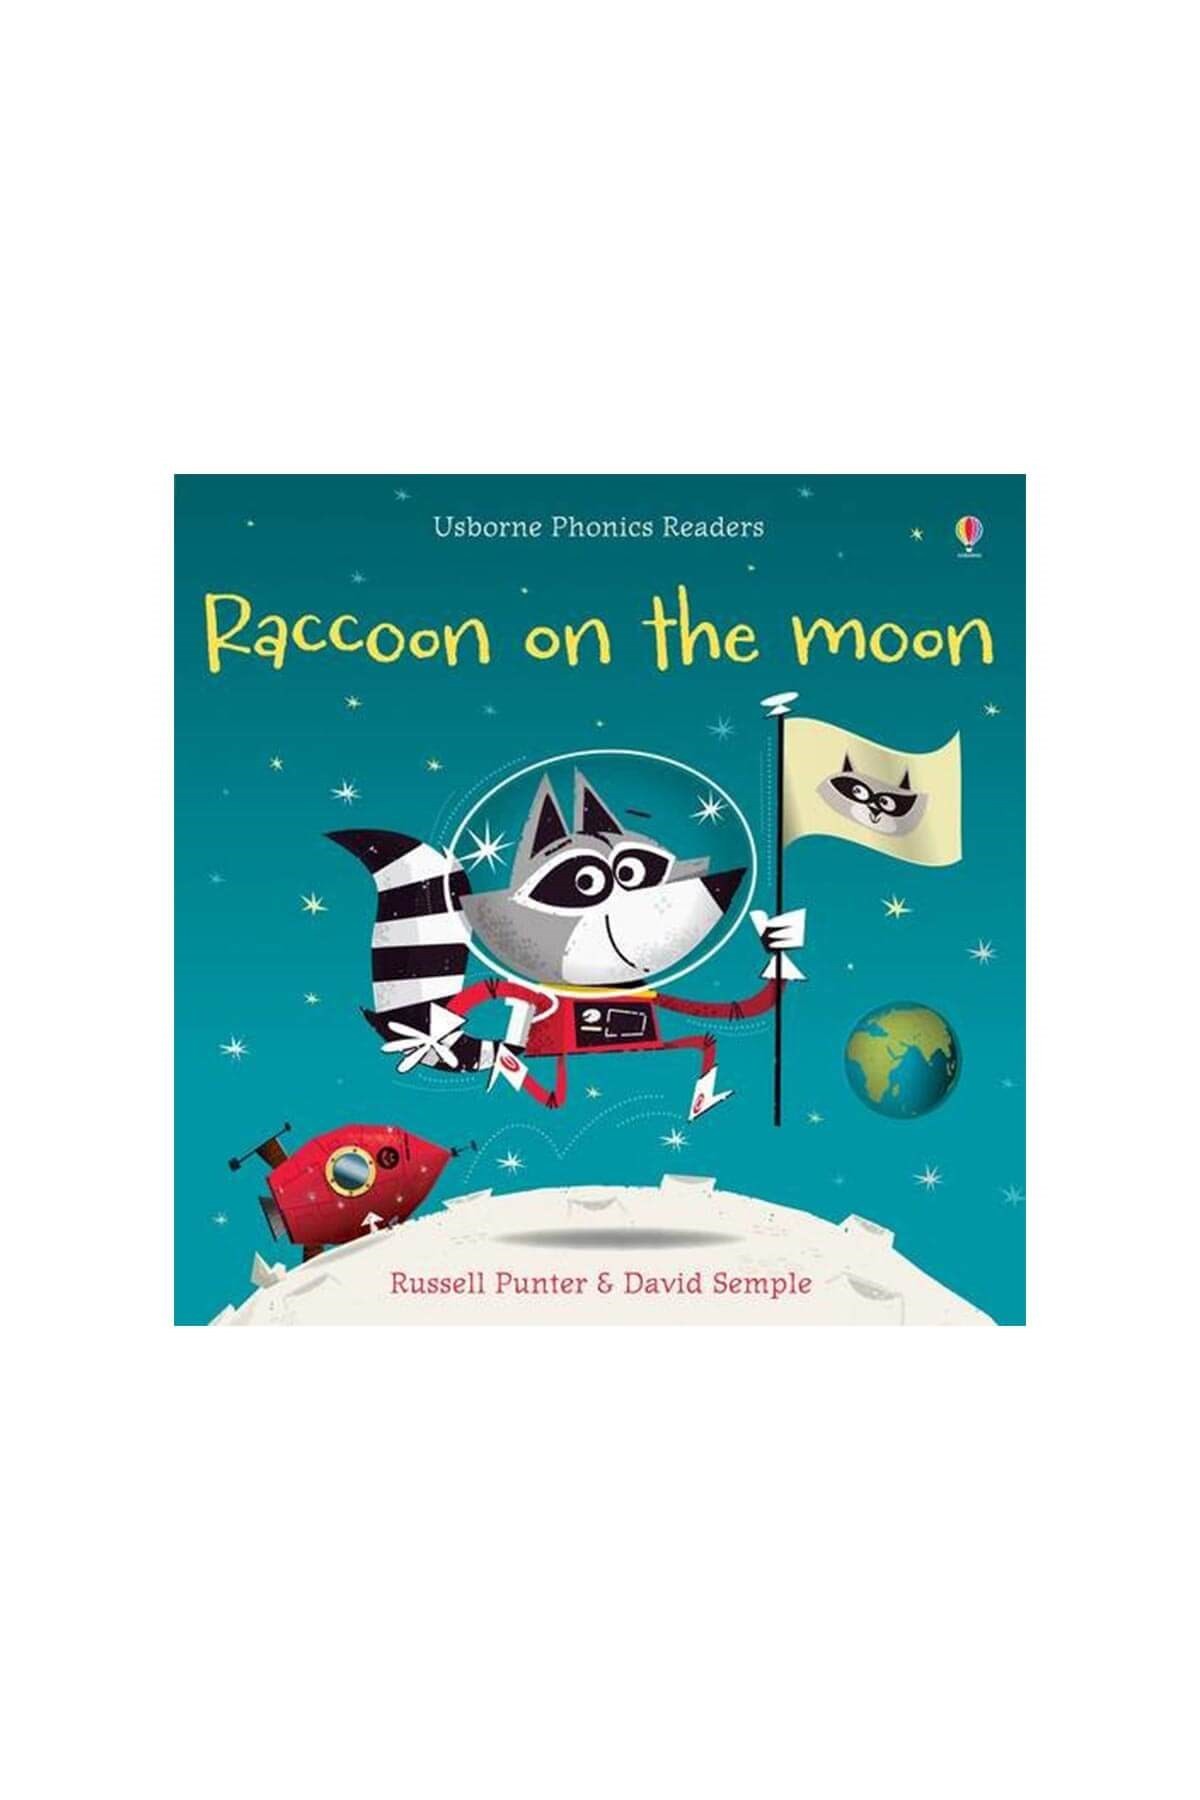 The Usborne Pho Raccoon on the Moon